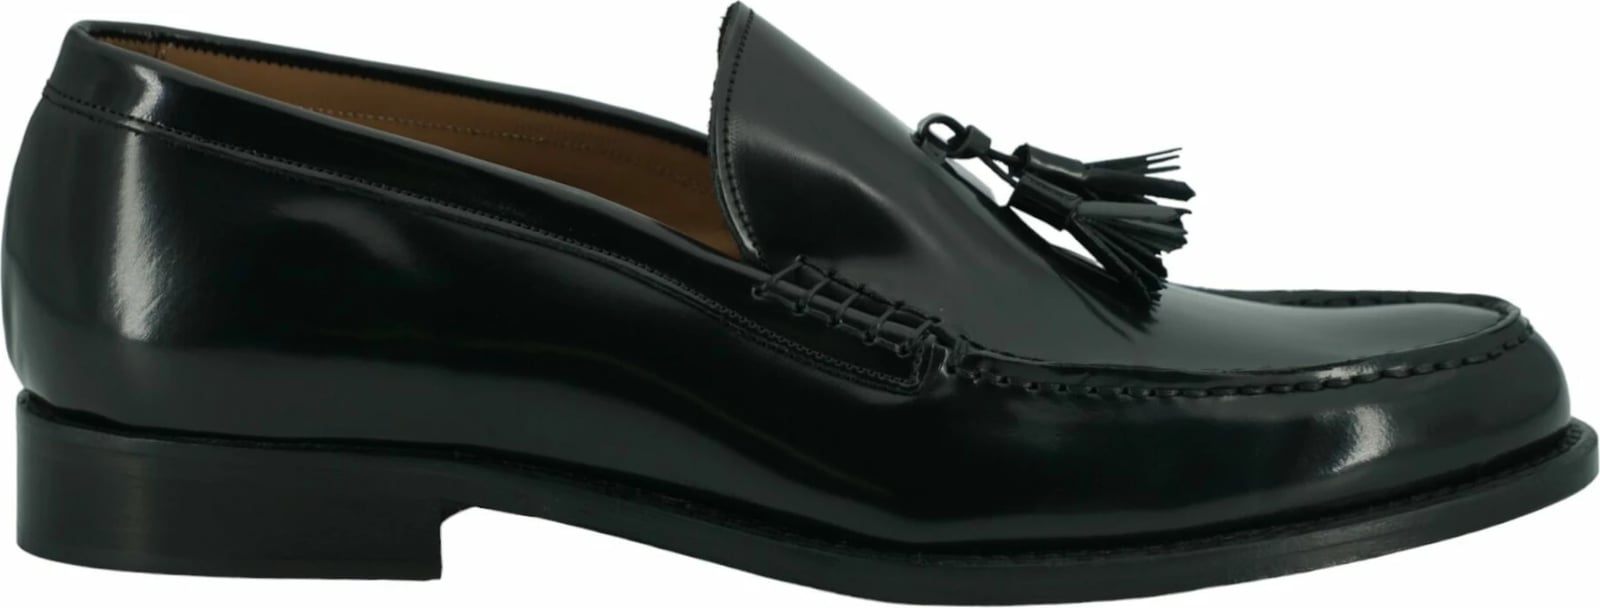 Këpucë për meshkuj Saxone of Scotland, të zeza